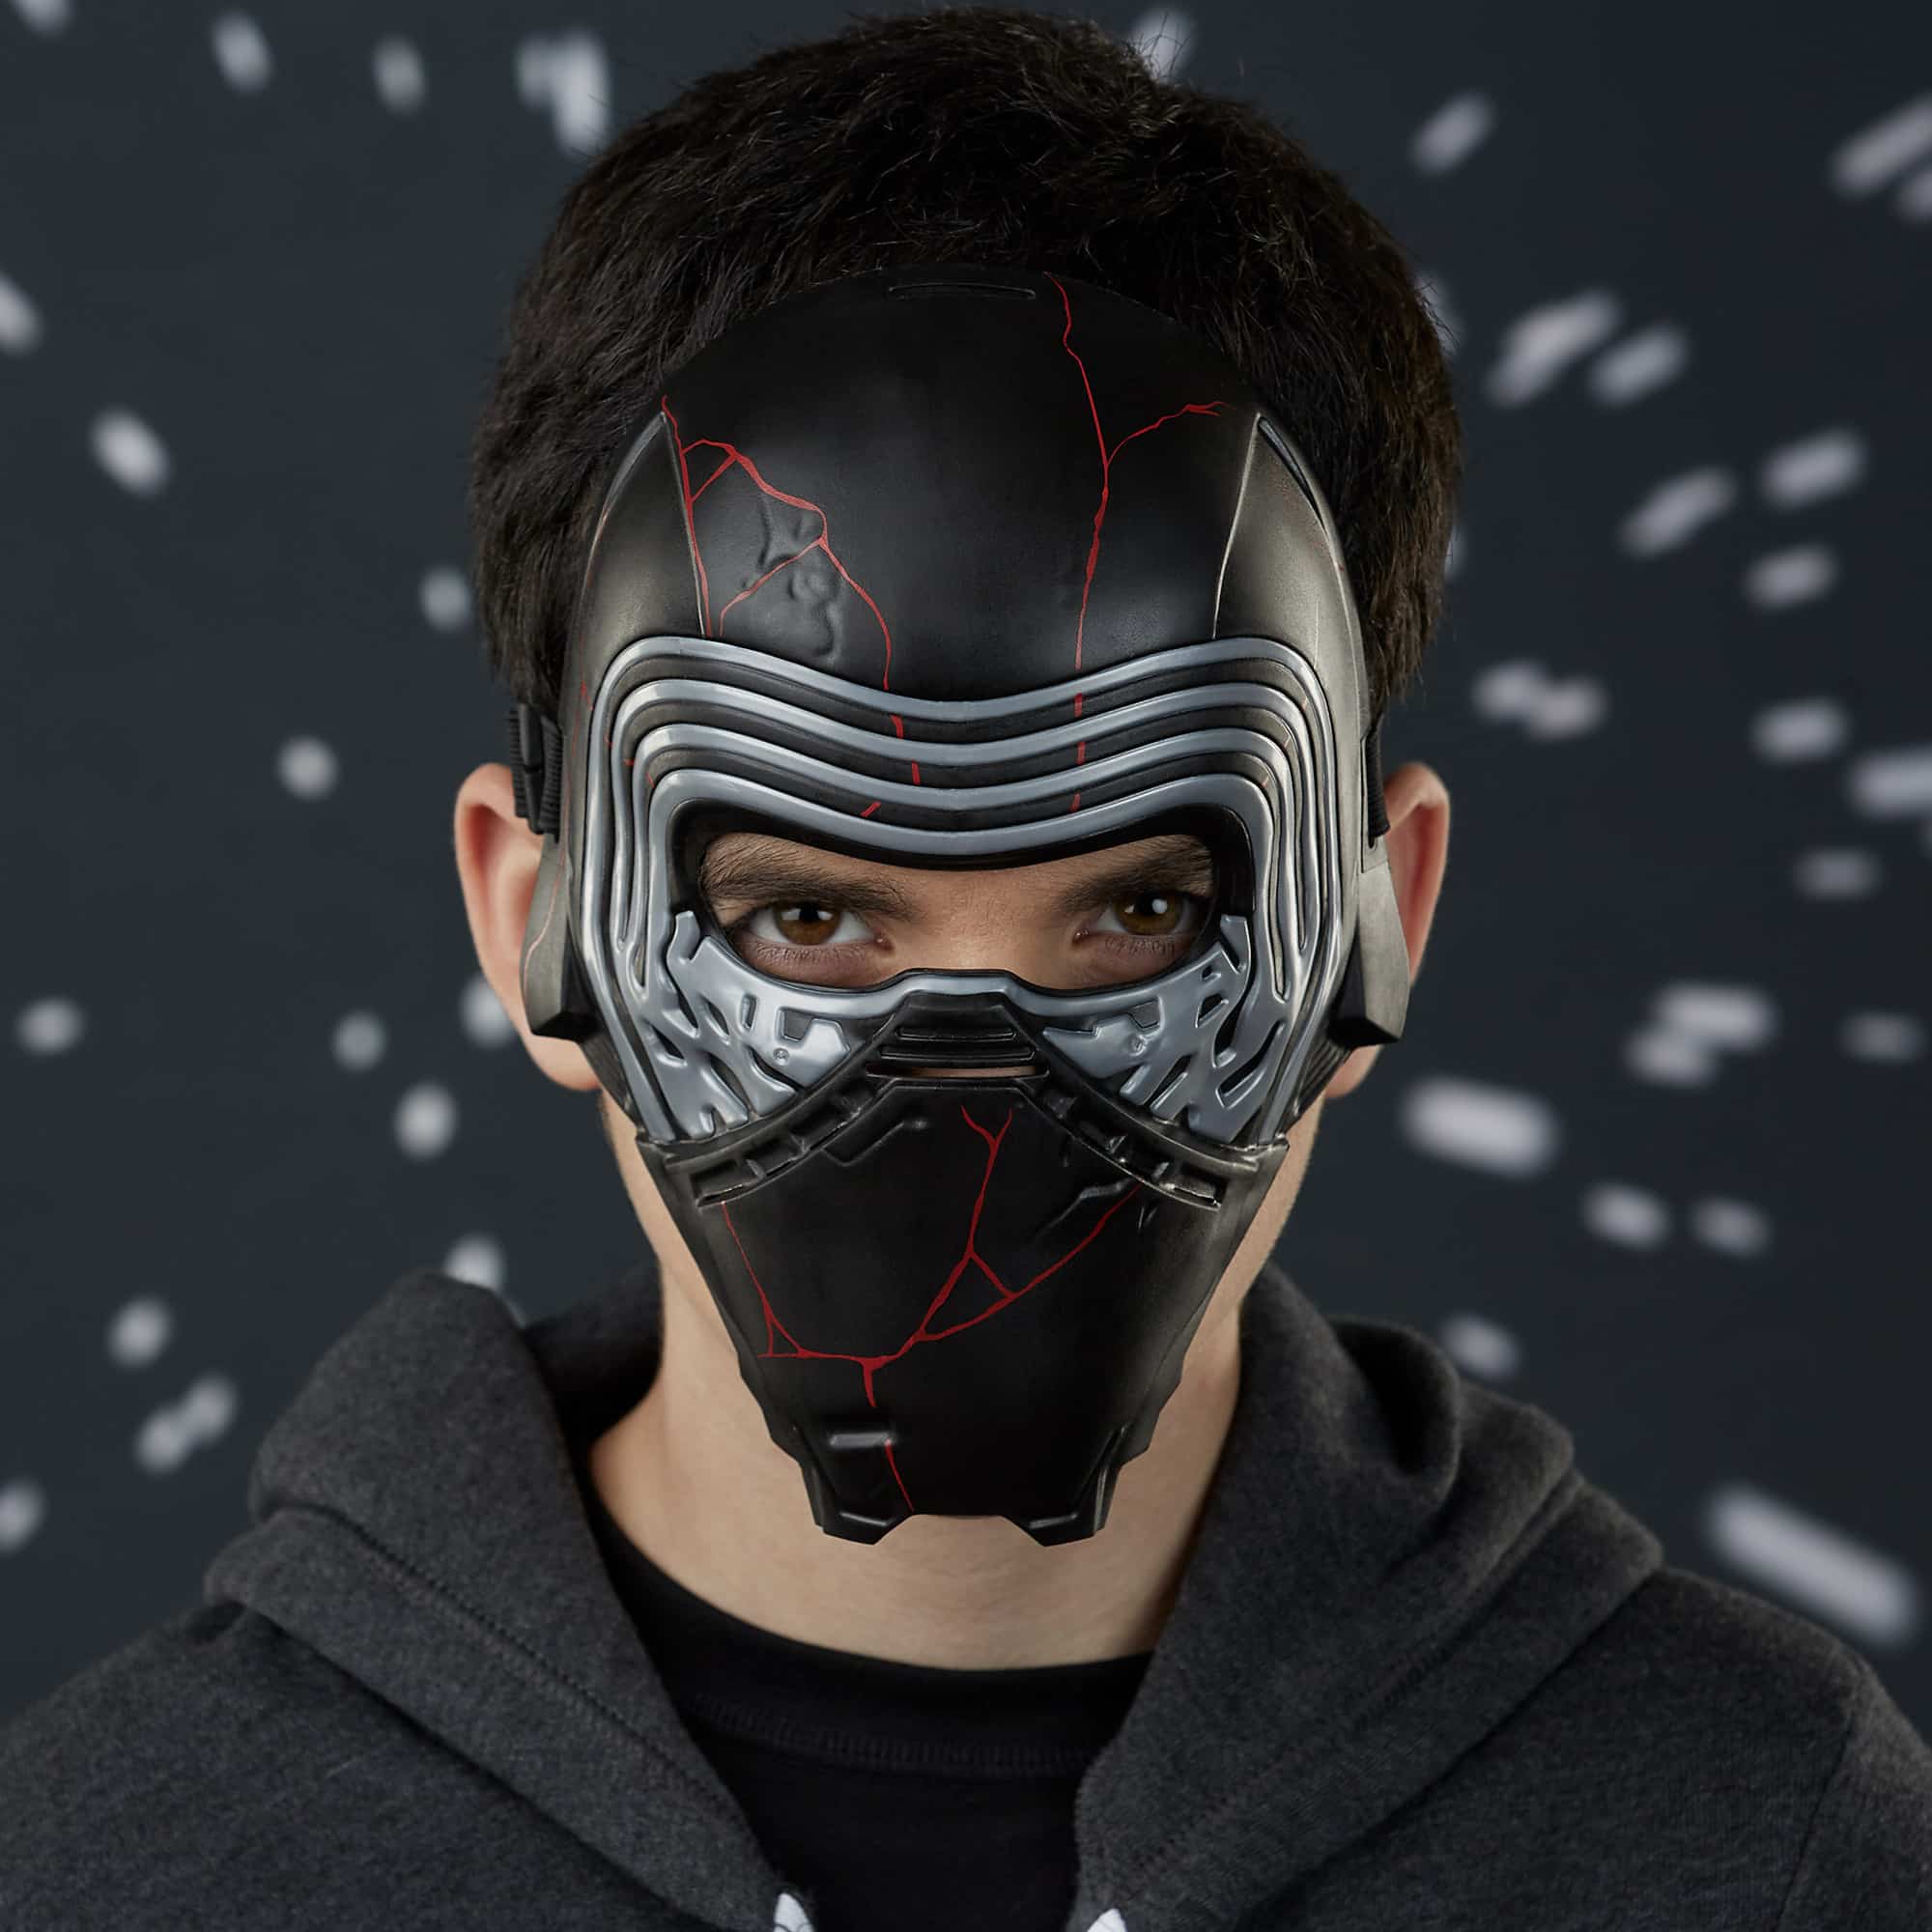 Star Wars Mask Assortment